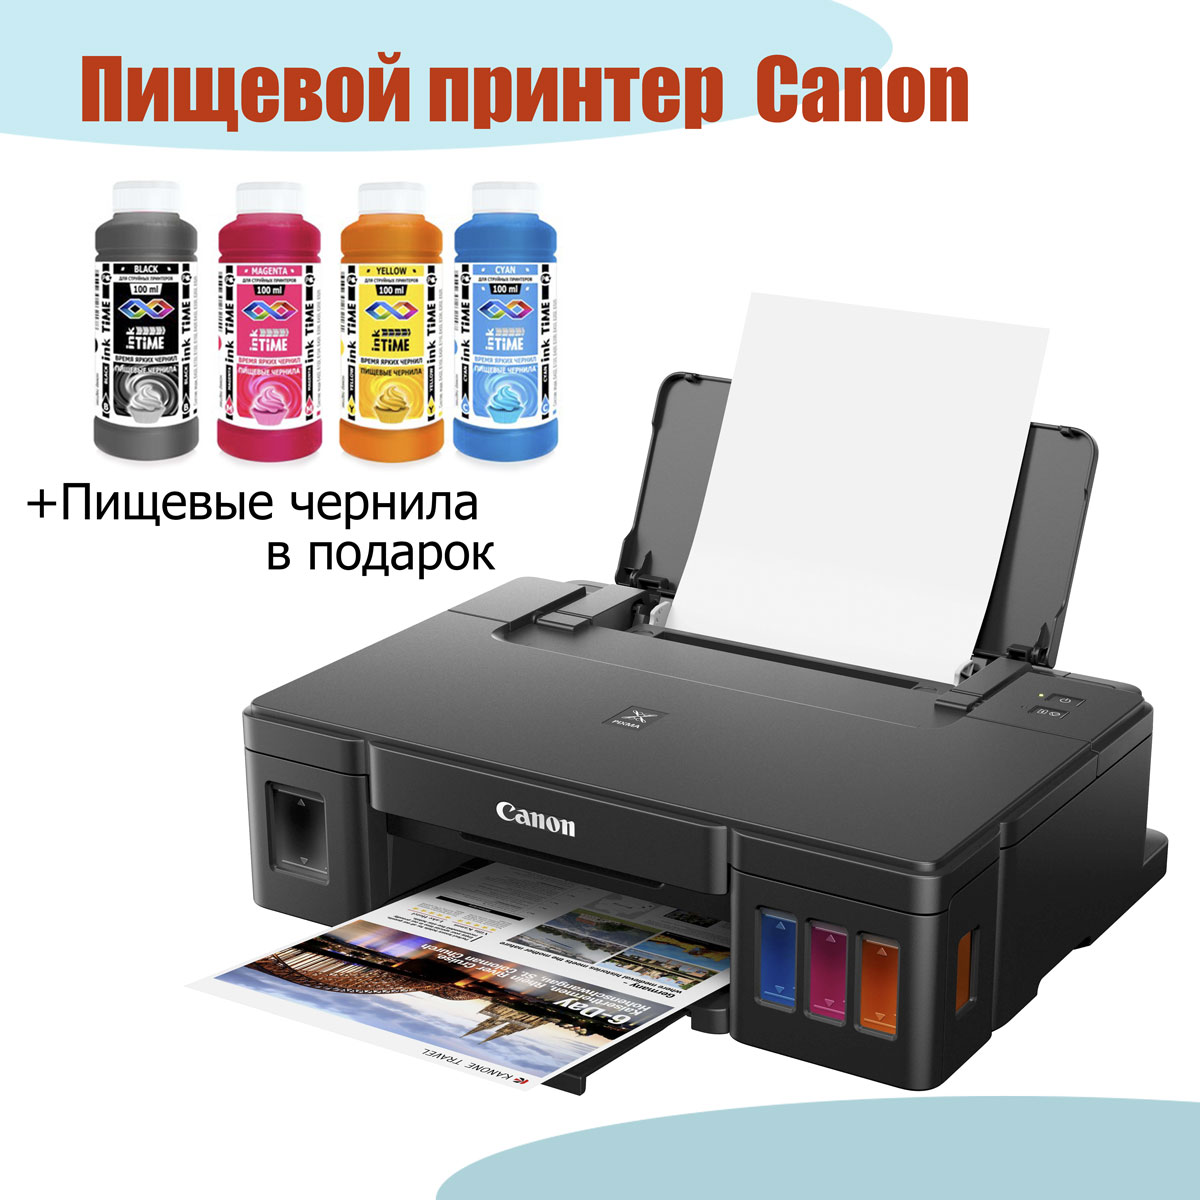 СНПЧ для принтеров и МФУ Canon Pixma. Скидки на чернила OCP.